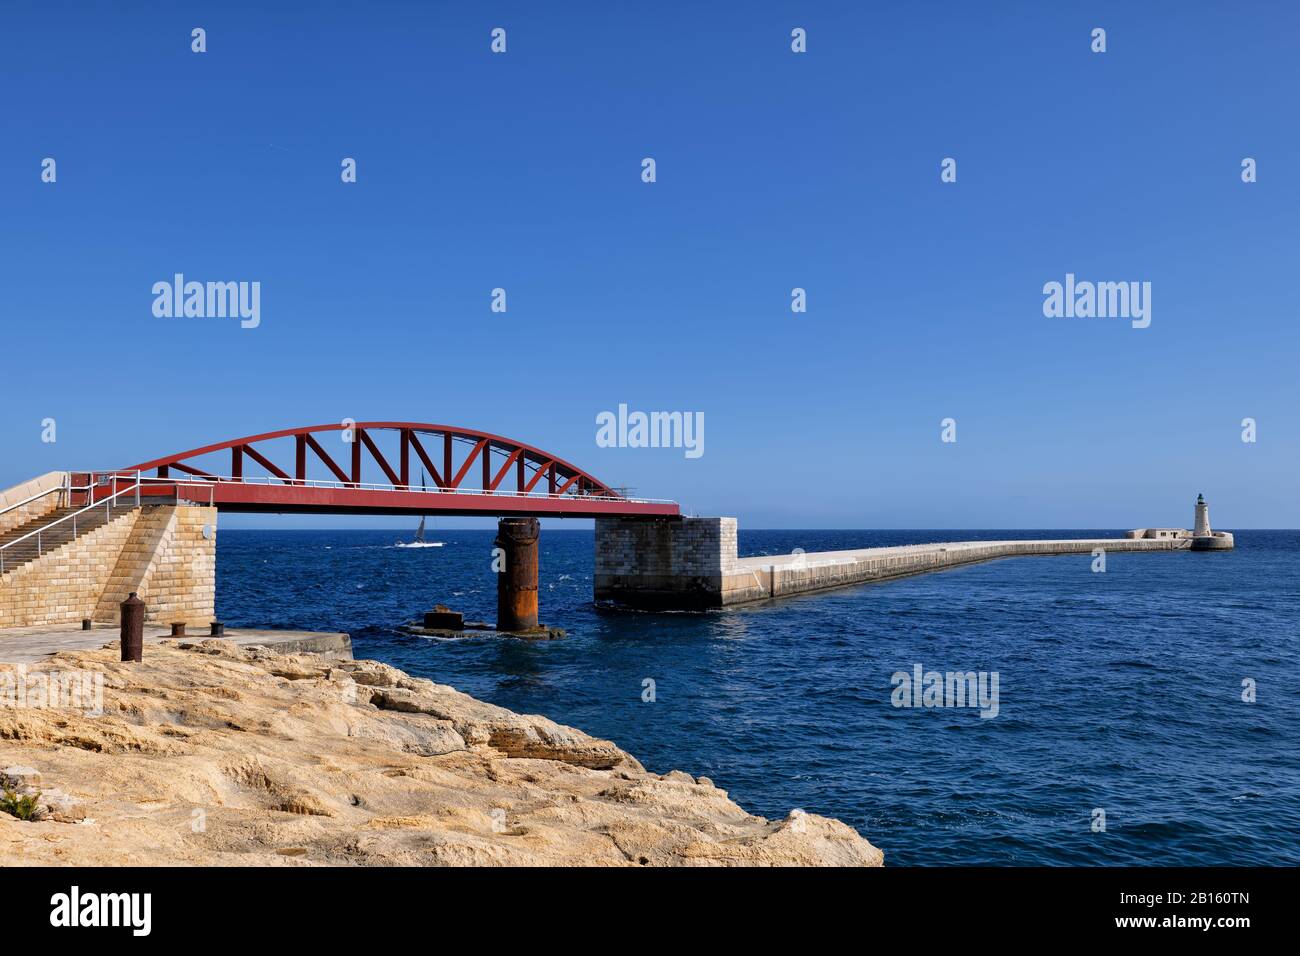 Il ponte di St Elmo o il ponte di Breakwater, ponte a traliccio ad arco a campata singola in acciaio a Valletta, Malta Foto Stock